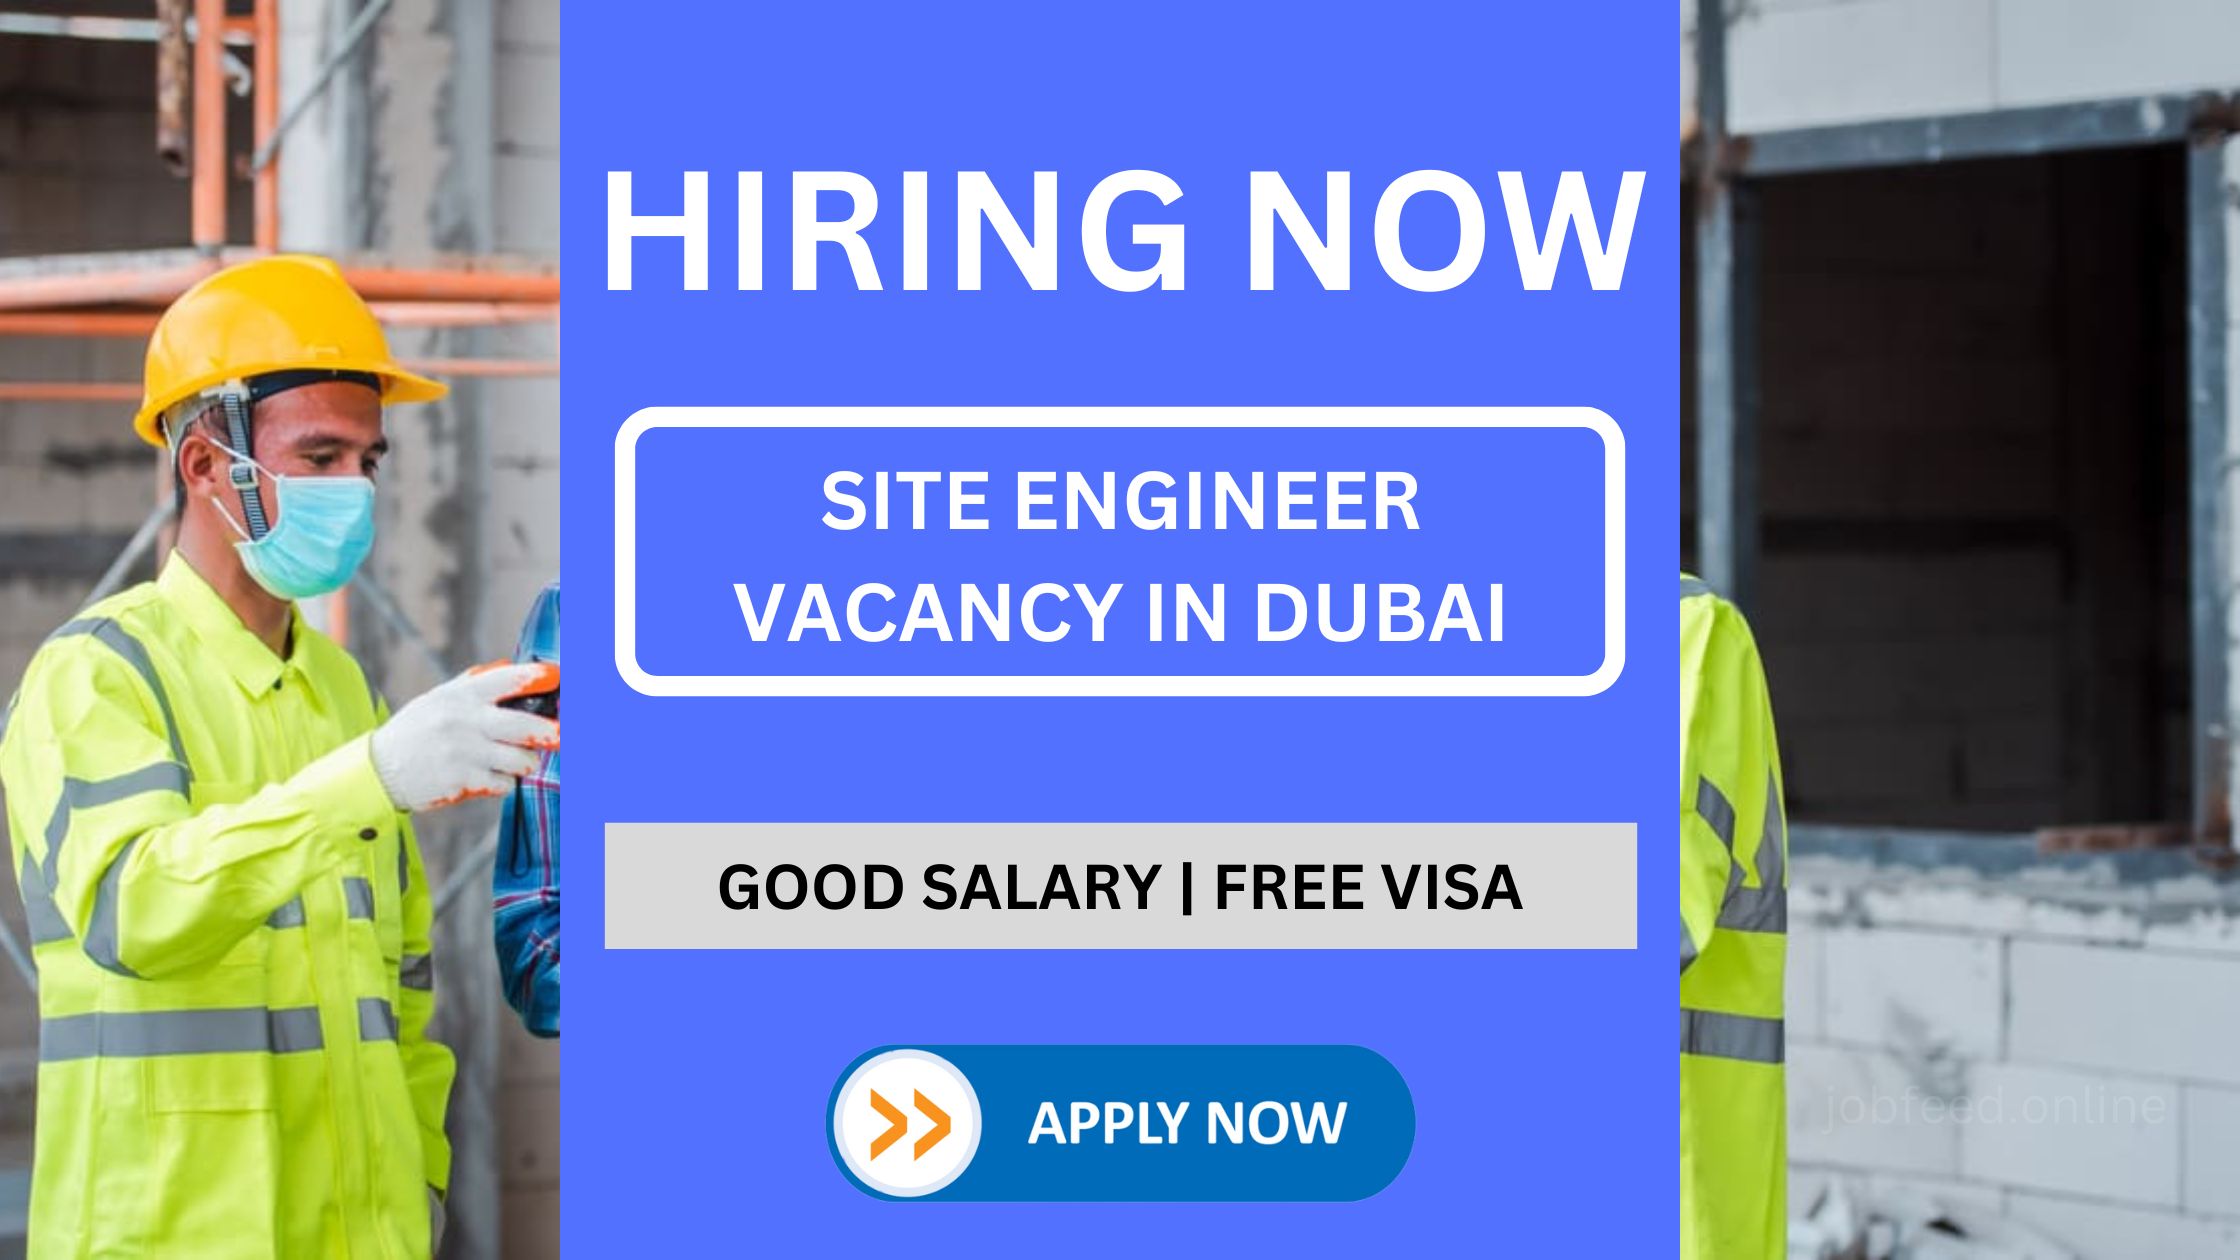 दुबई में साइट इंजीनियर भर्ती - अनुभवी उम्मीदवार आवेदन कर सकते हैं